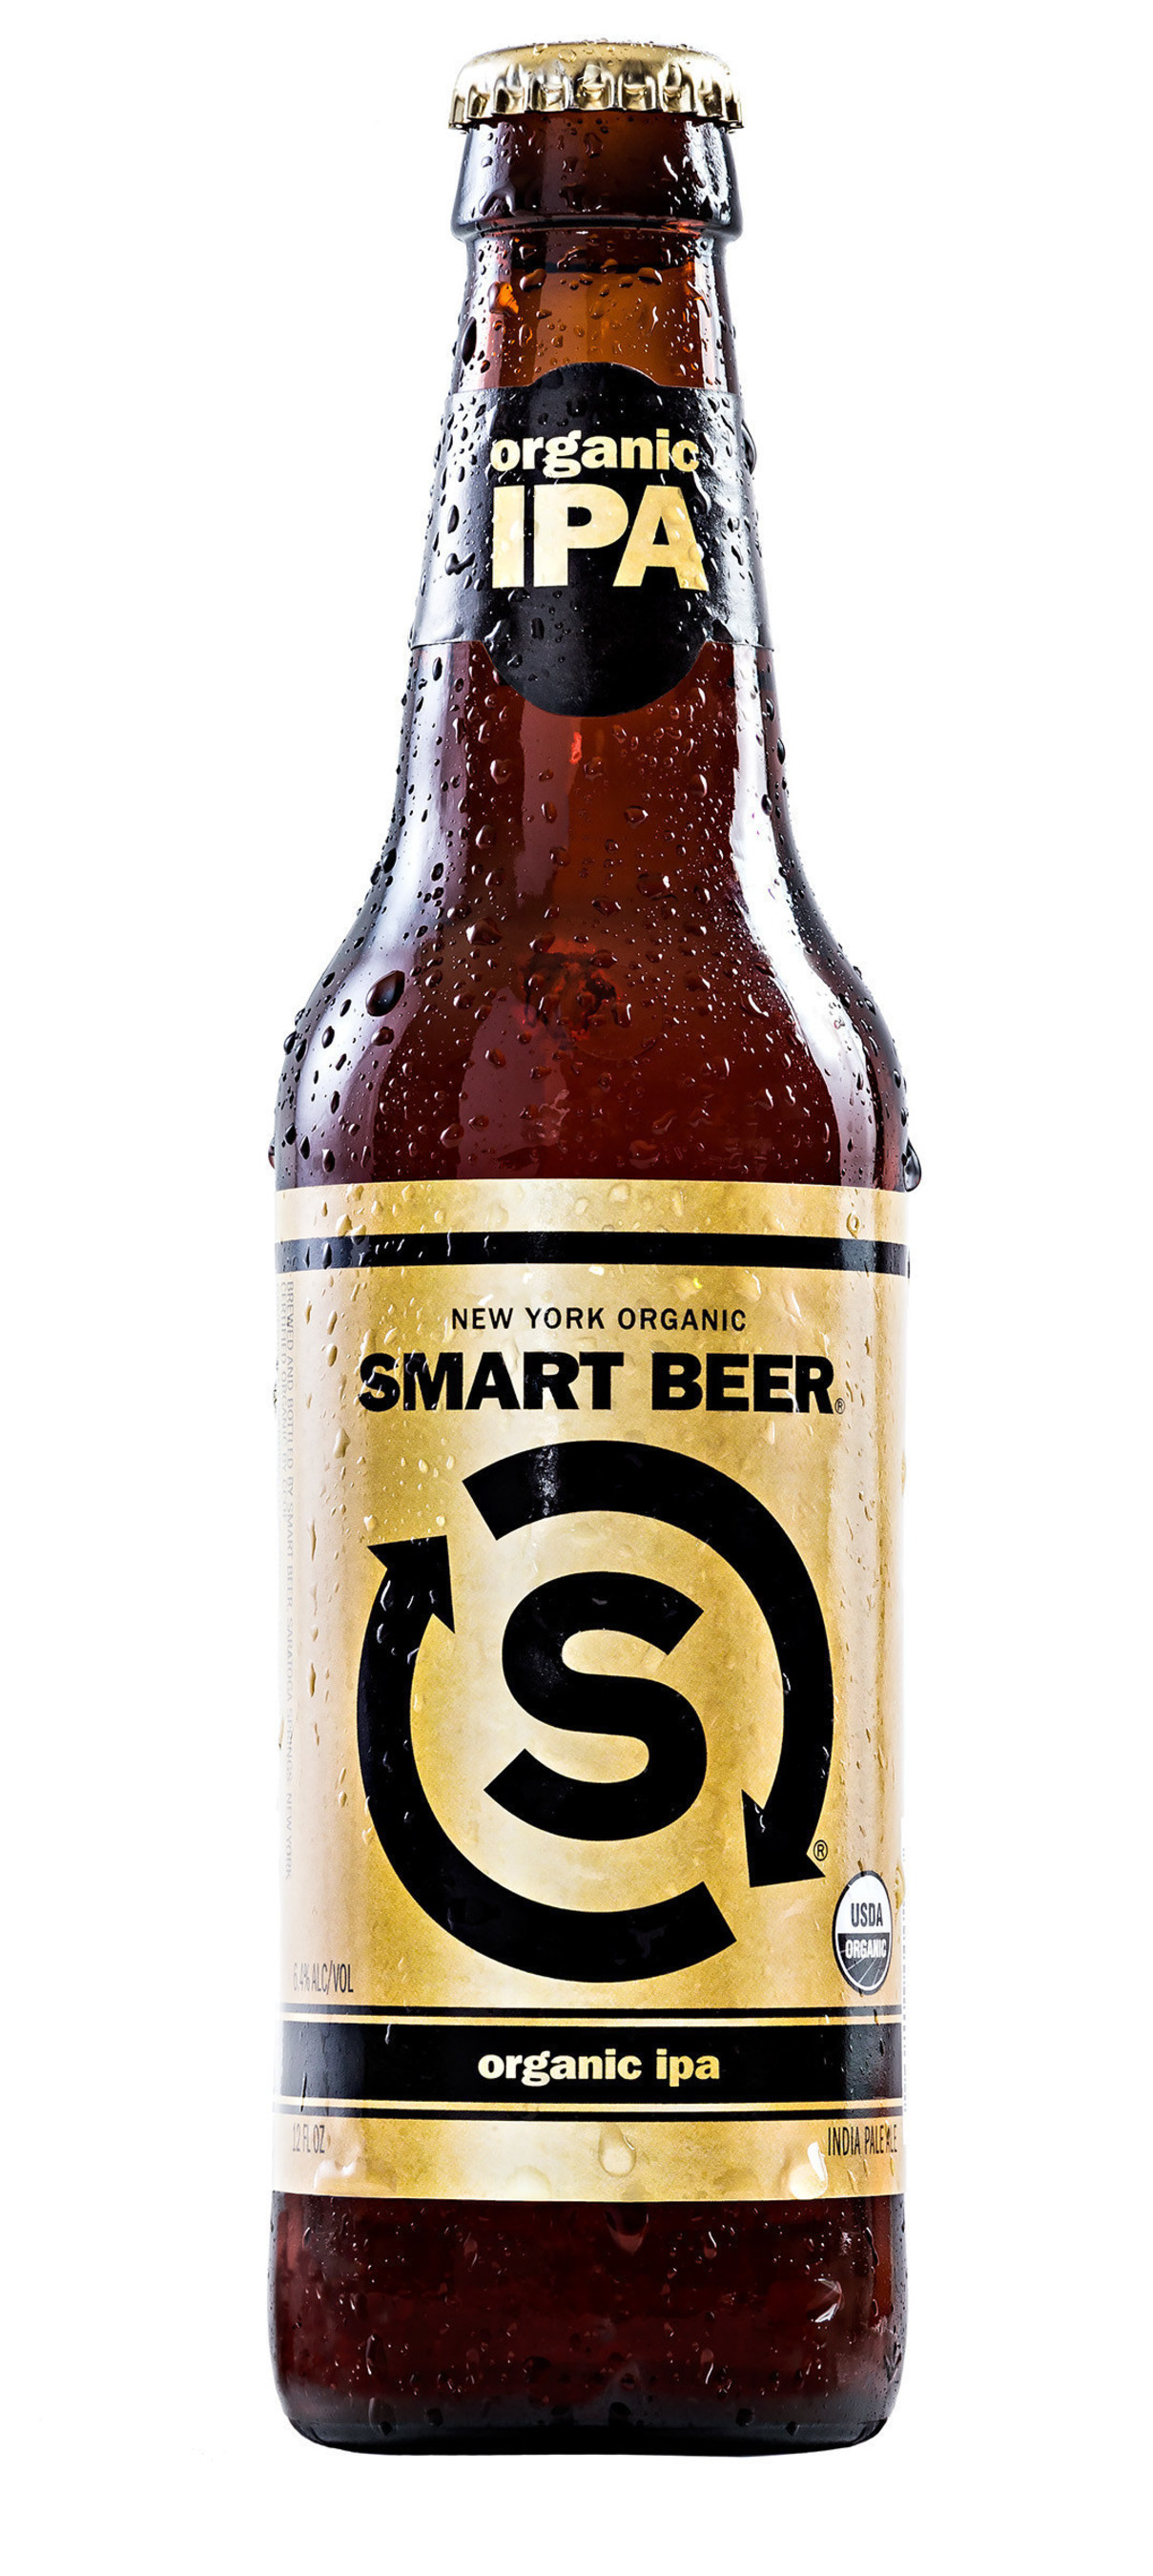 Smart Beer's Organic IPA